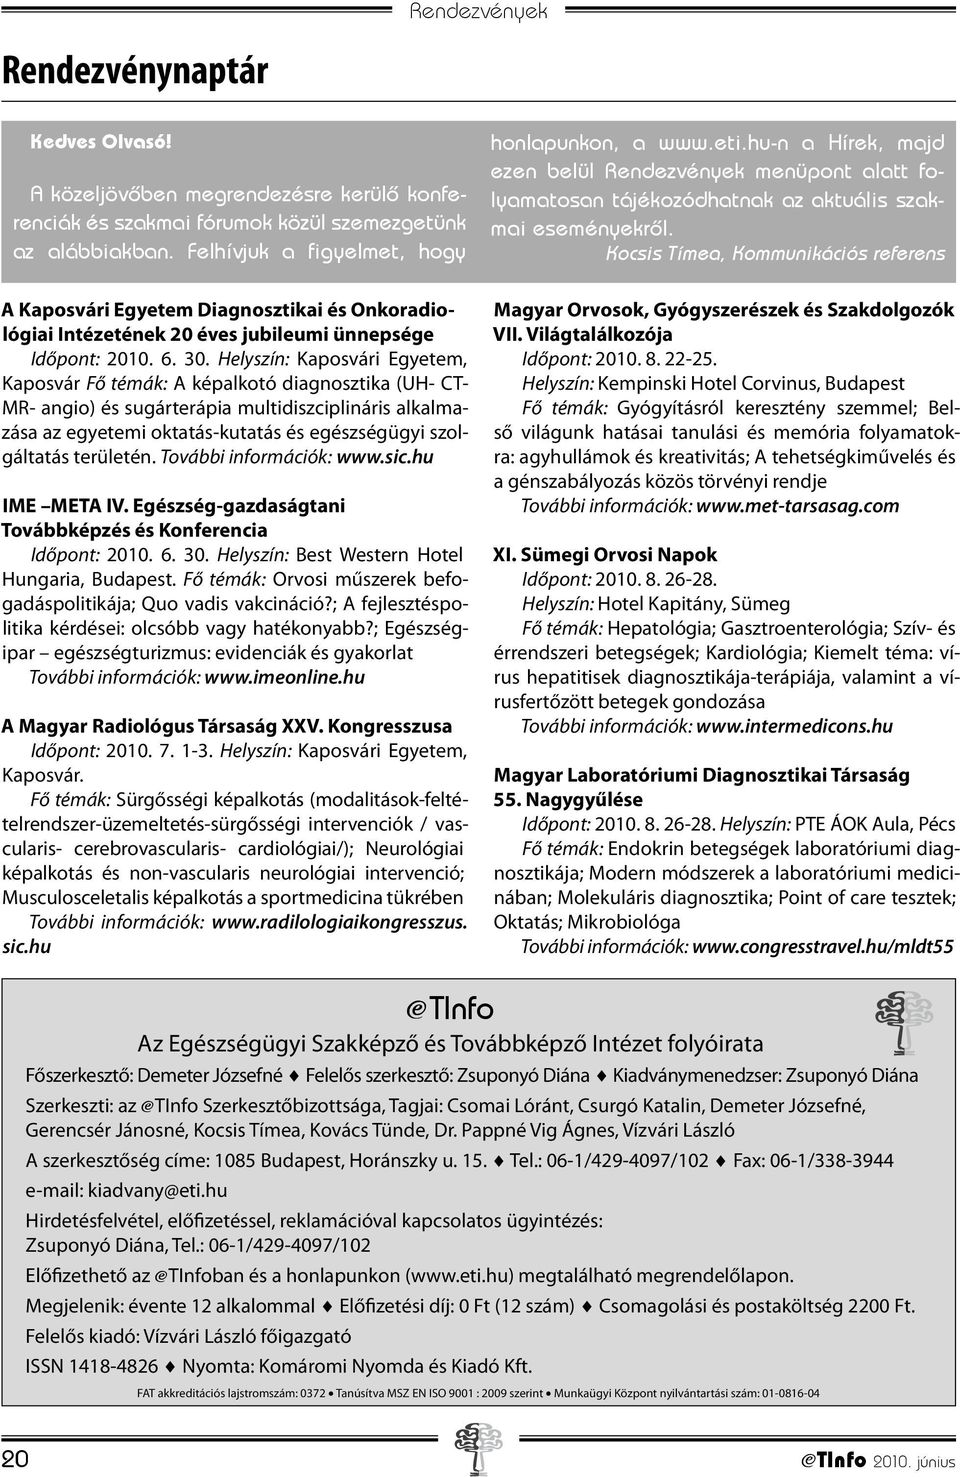 Helyszín: Kaposvári Egyetem, Kaposvár Fő témák: A képalkotó diagnosztika (UH- CT- MR- angio) és sugárterápia multidiszciplináris alkalmazása az egyetemi oktatás-kutatás és egészségügyi szolgáltatás